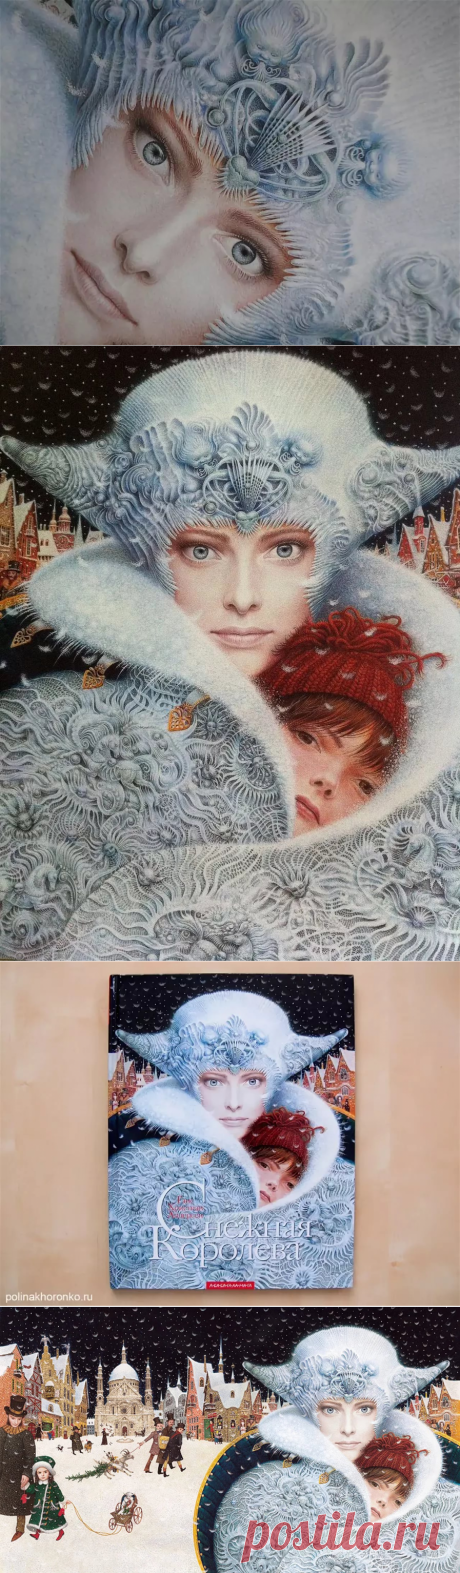 Ерко художник -снежная королева: 9 тыс изображений найдено в Яндекс.Картинках